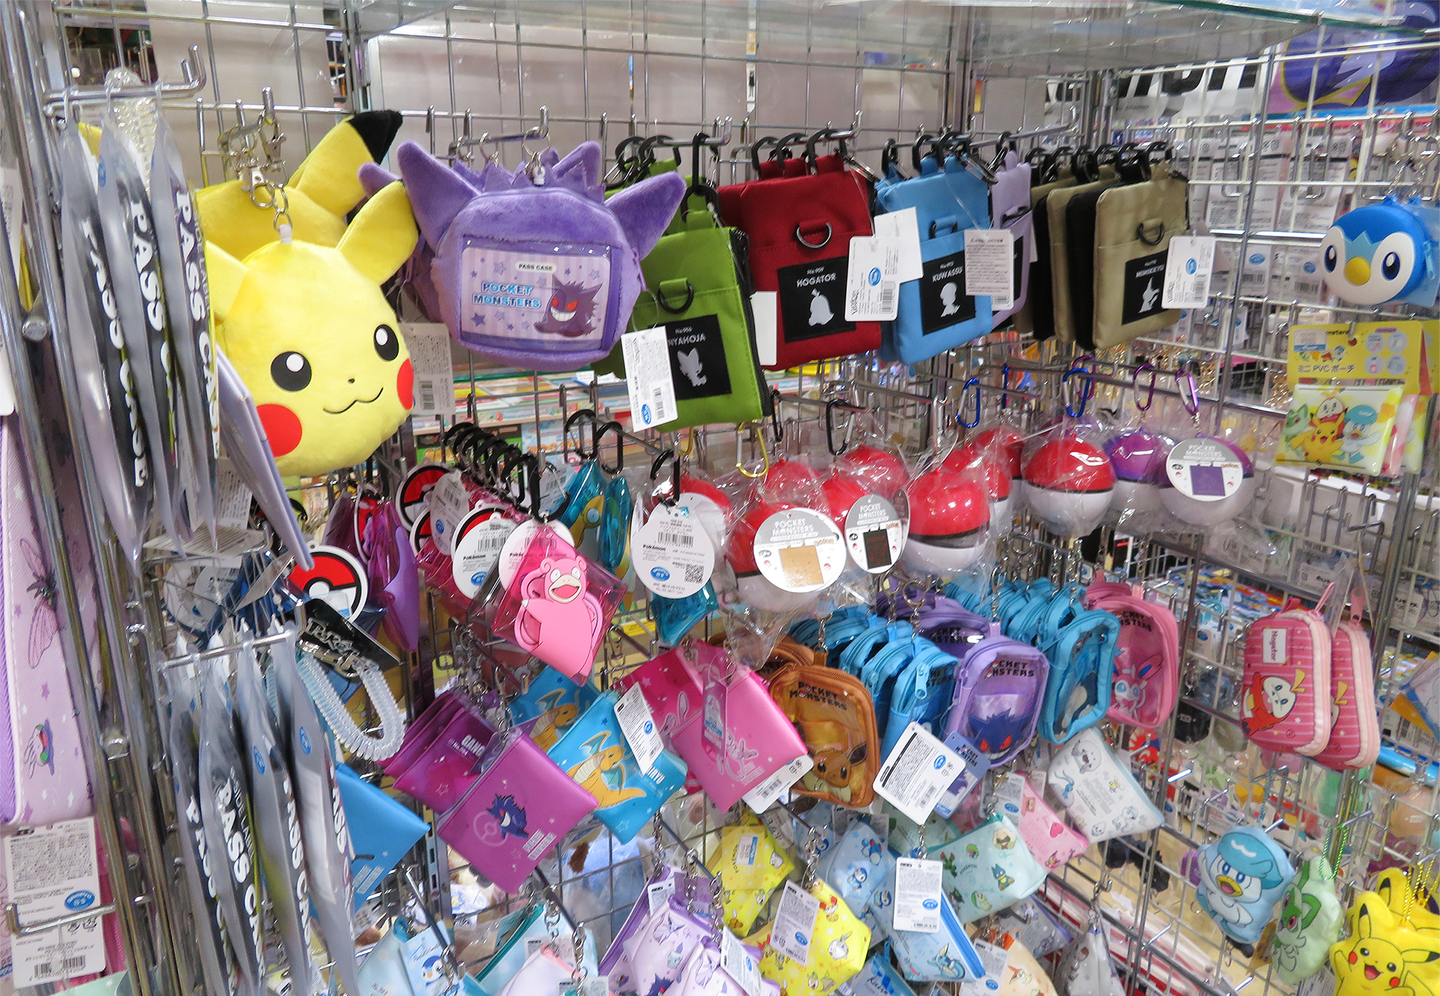 Images of POKEMON merchandise sold at YAMASHIROYA2